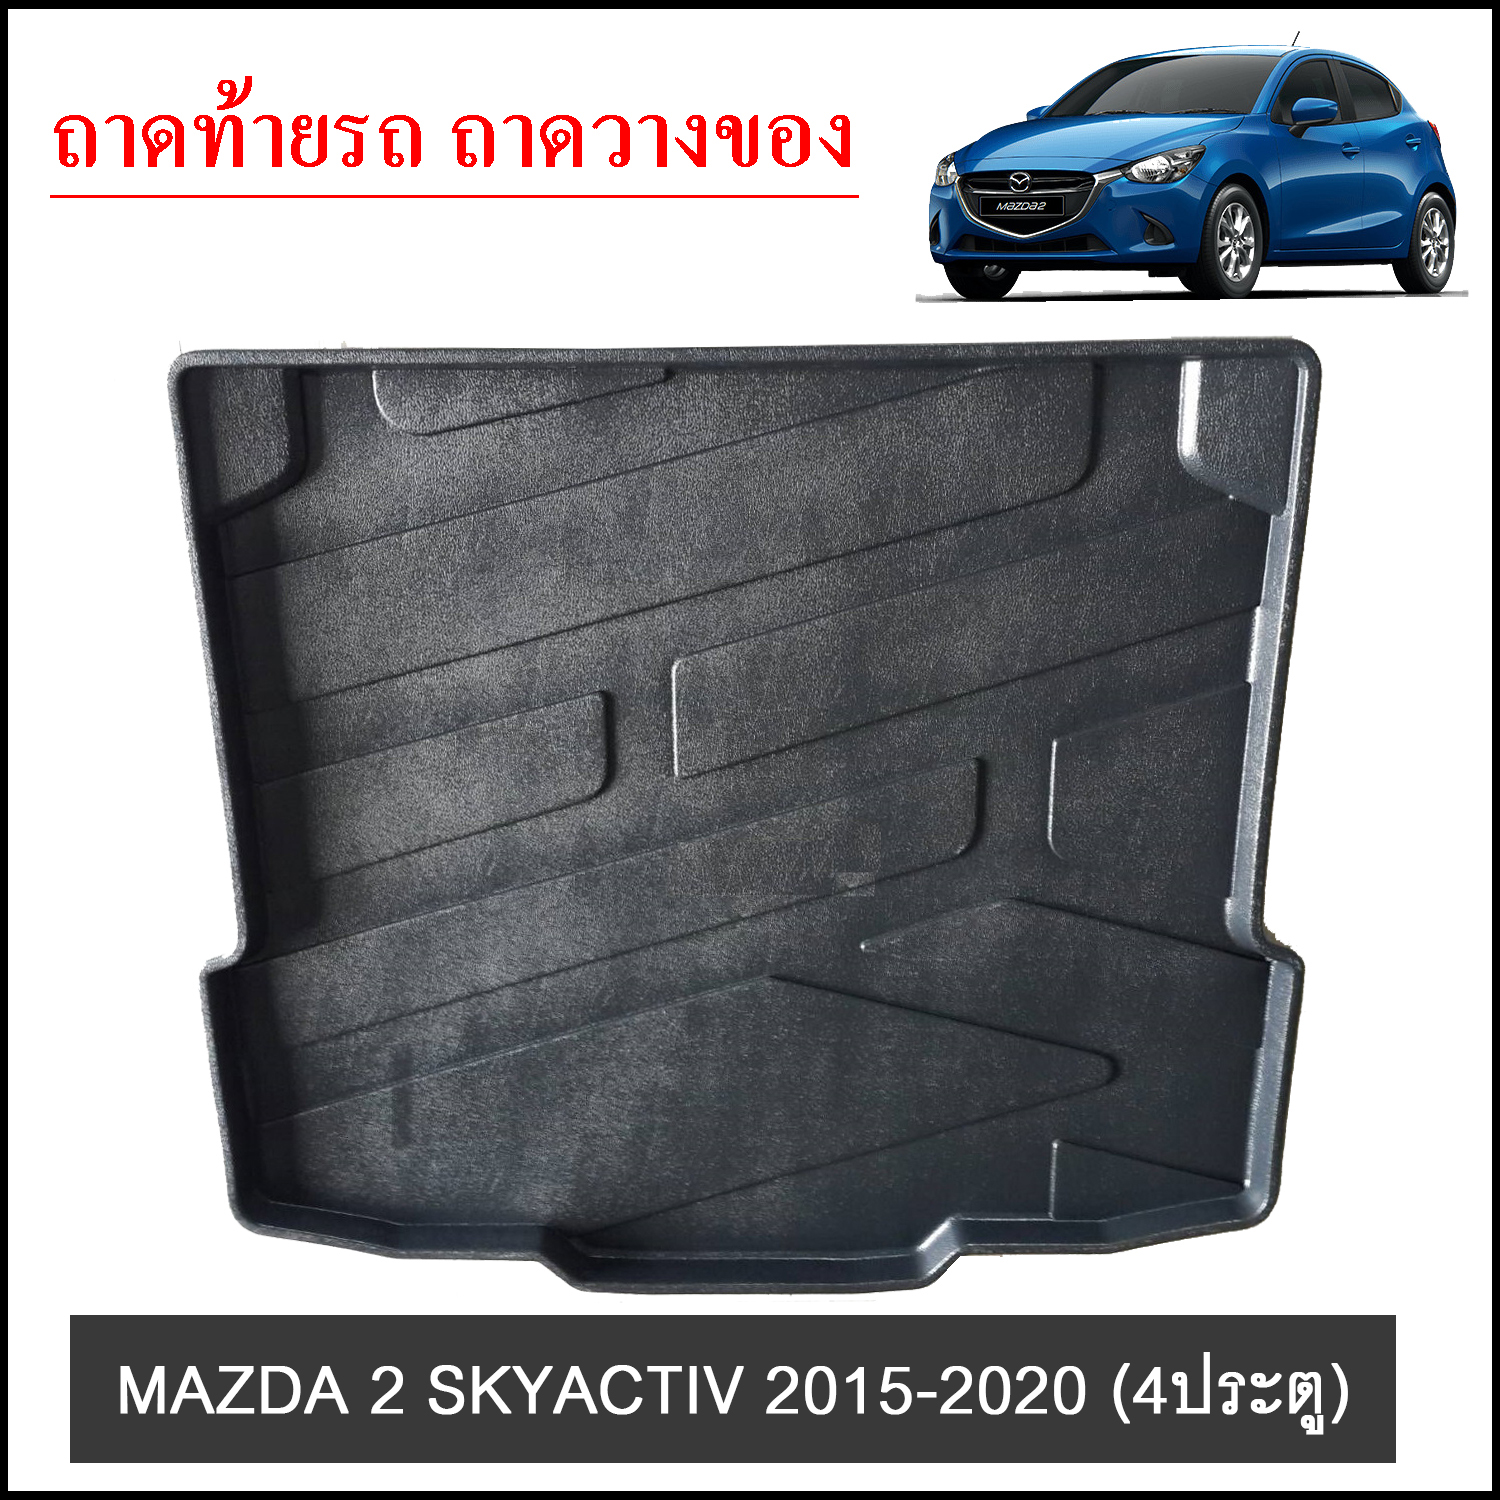 ถาดท้ายวางของ MAZDA 2 Skyactiv 2015-2020 4ประตู